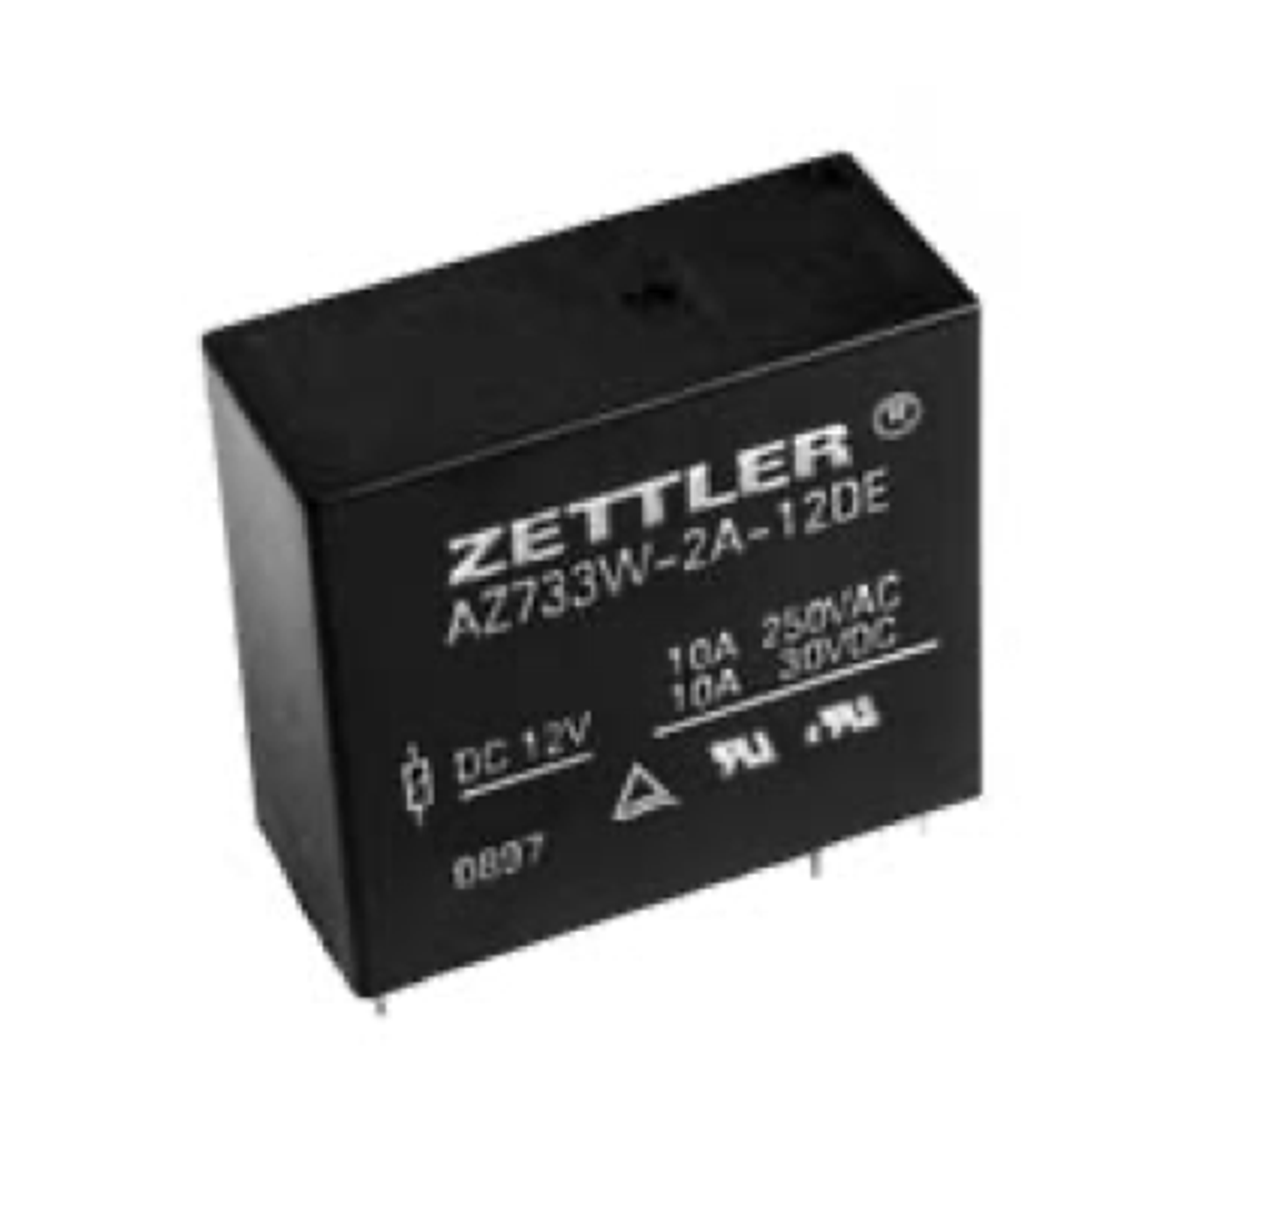 American Zettler AZ733W-2A-5D Power Relay